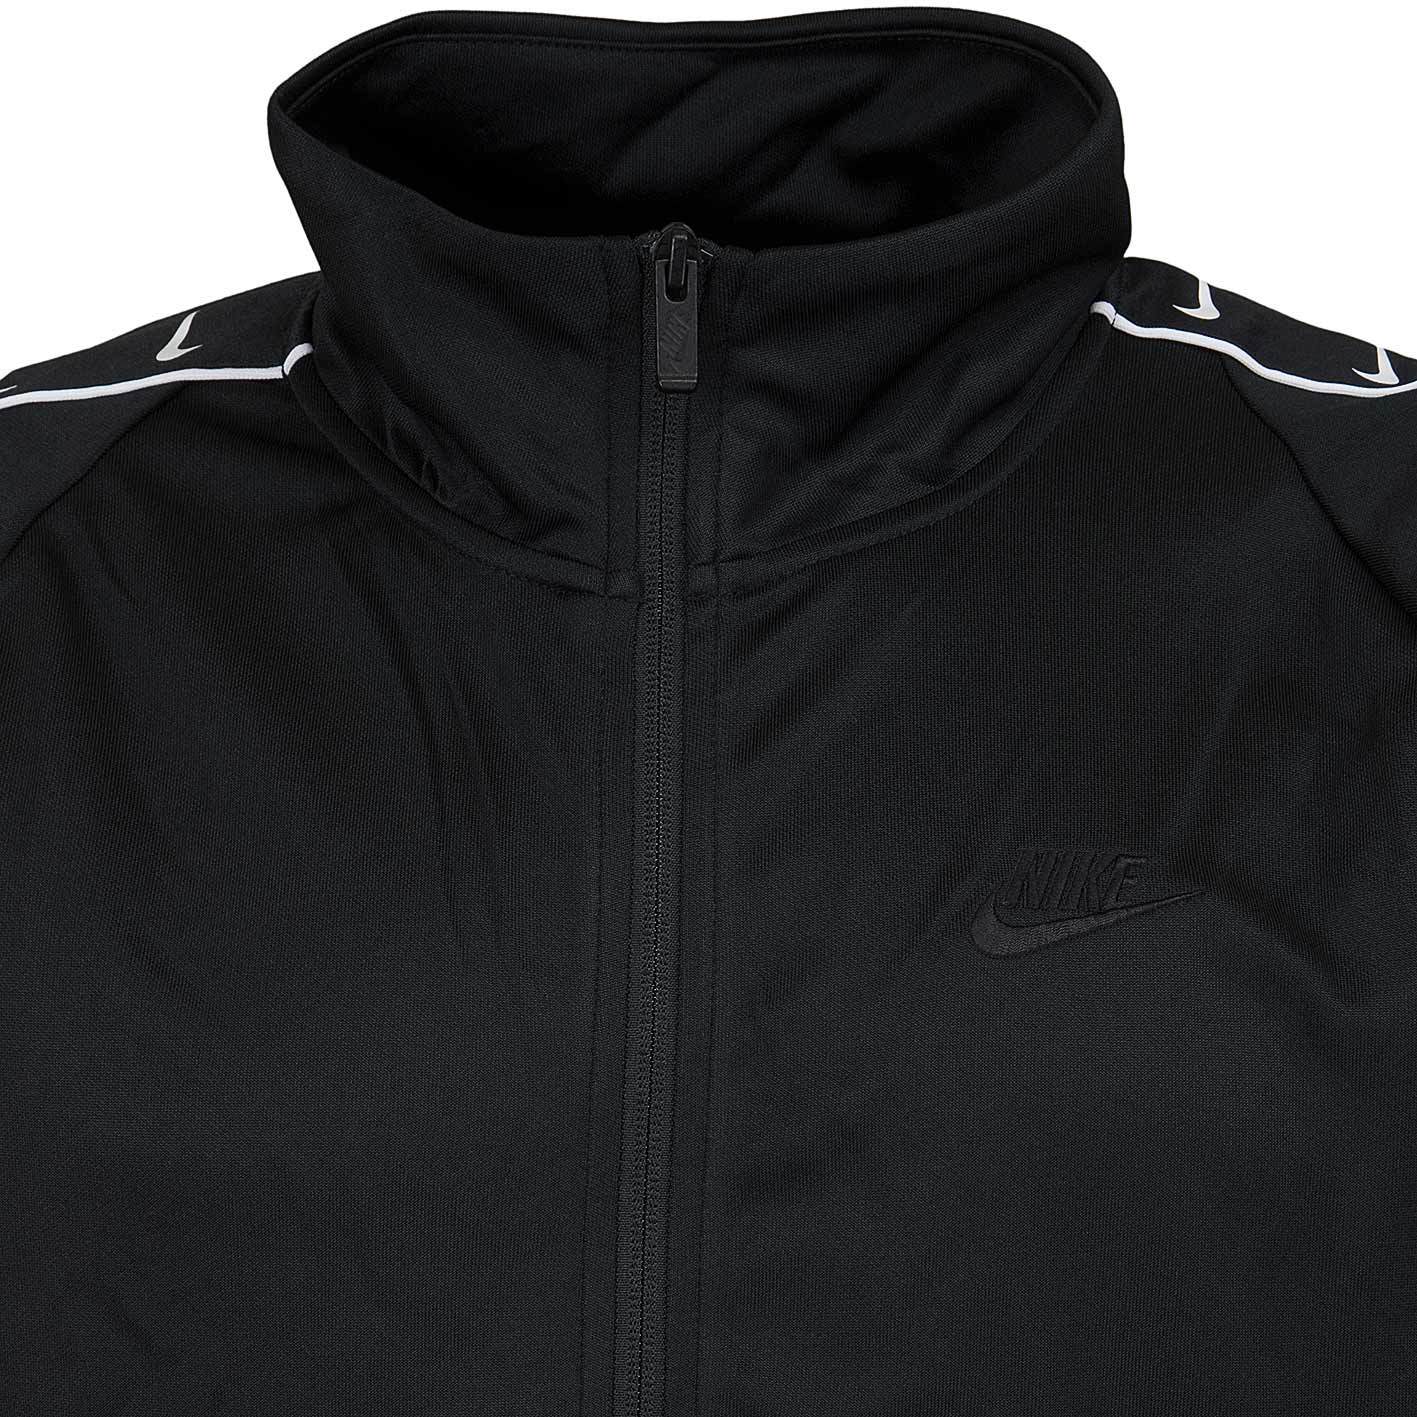 ☆ Nike Trainingsjacke HBR PK STMT schwarz/weiß - hier bestellen!